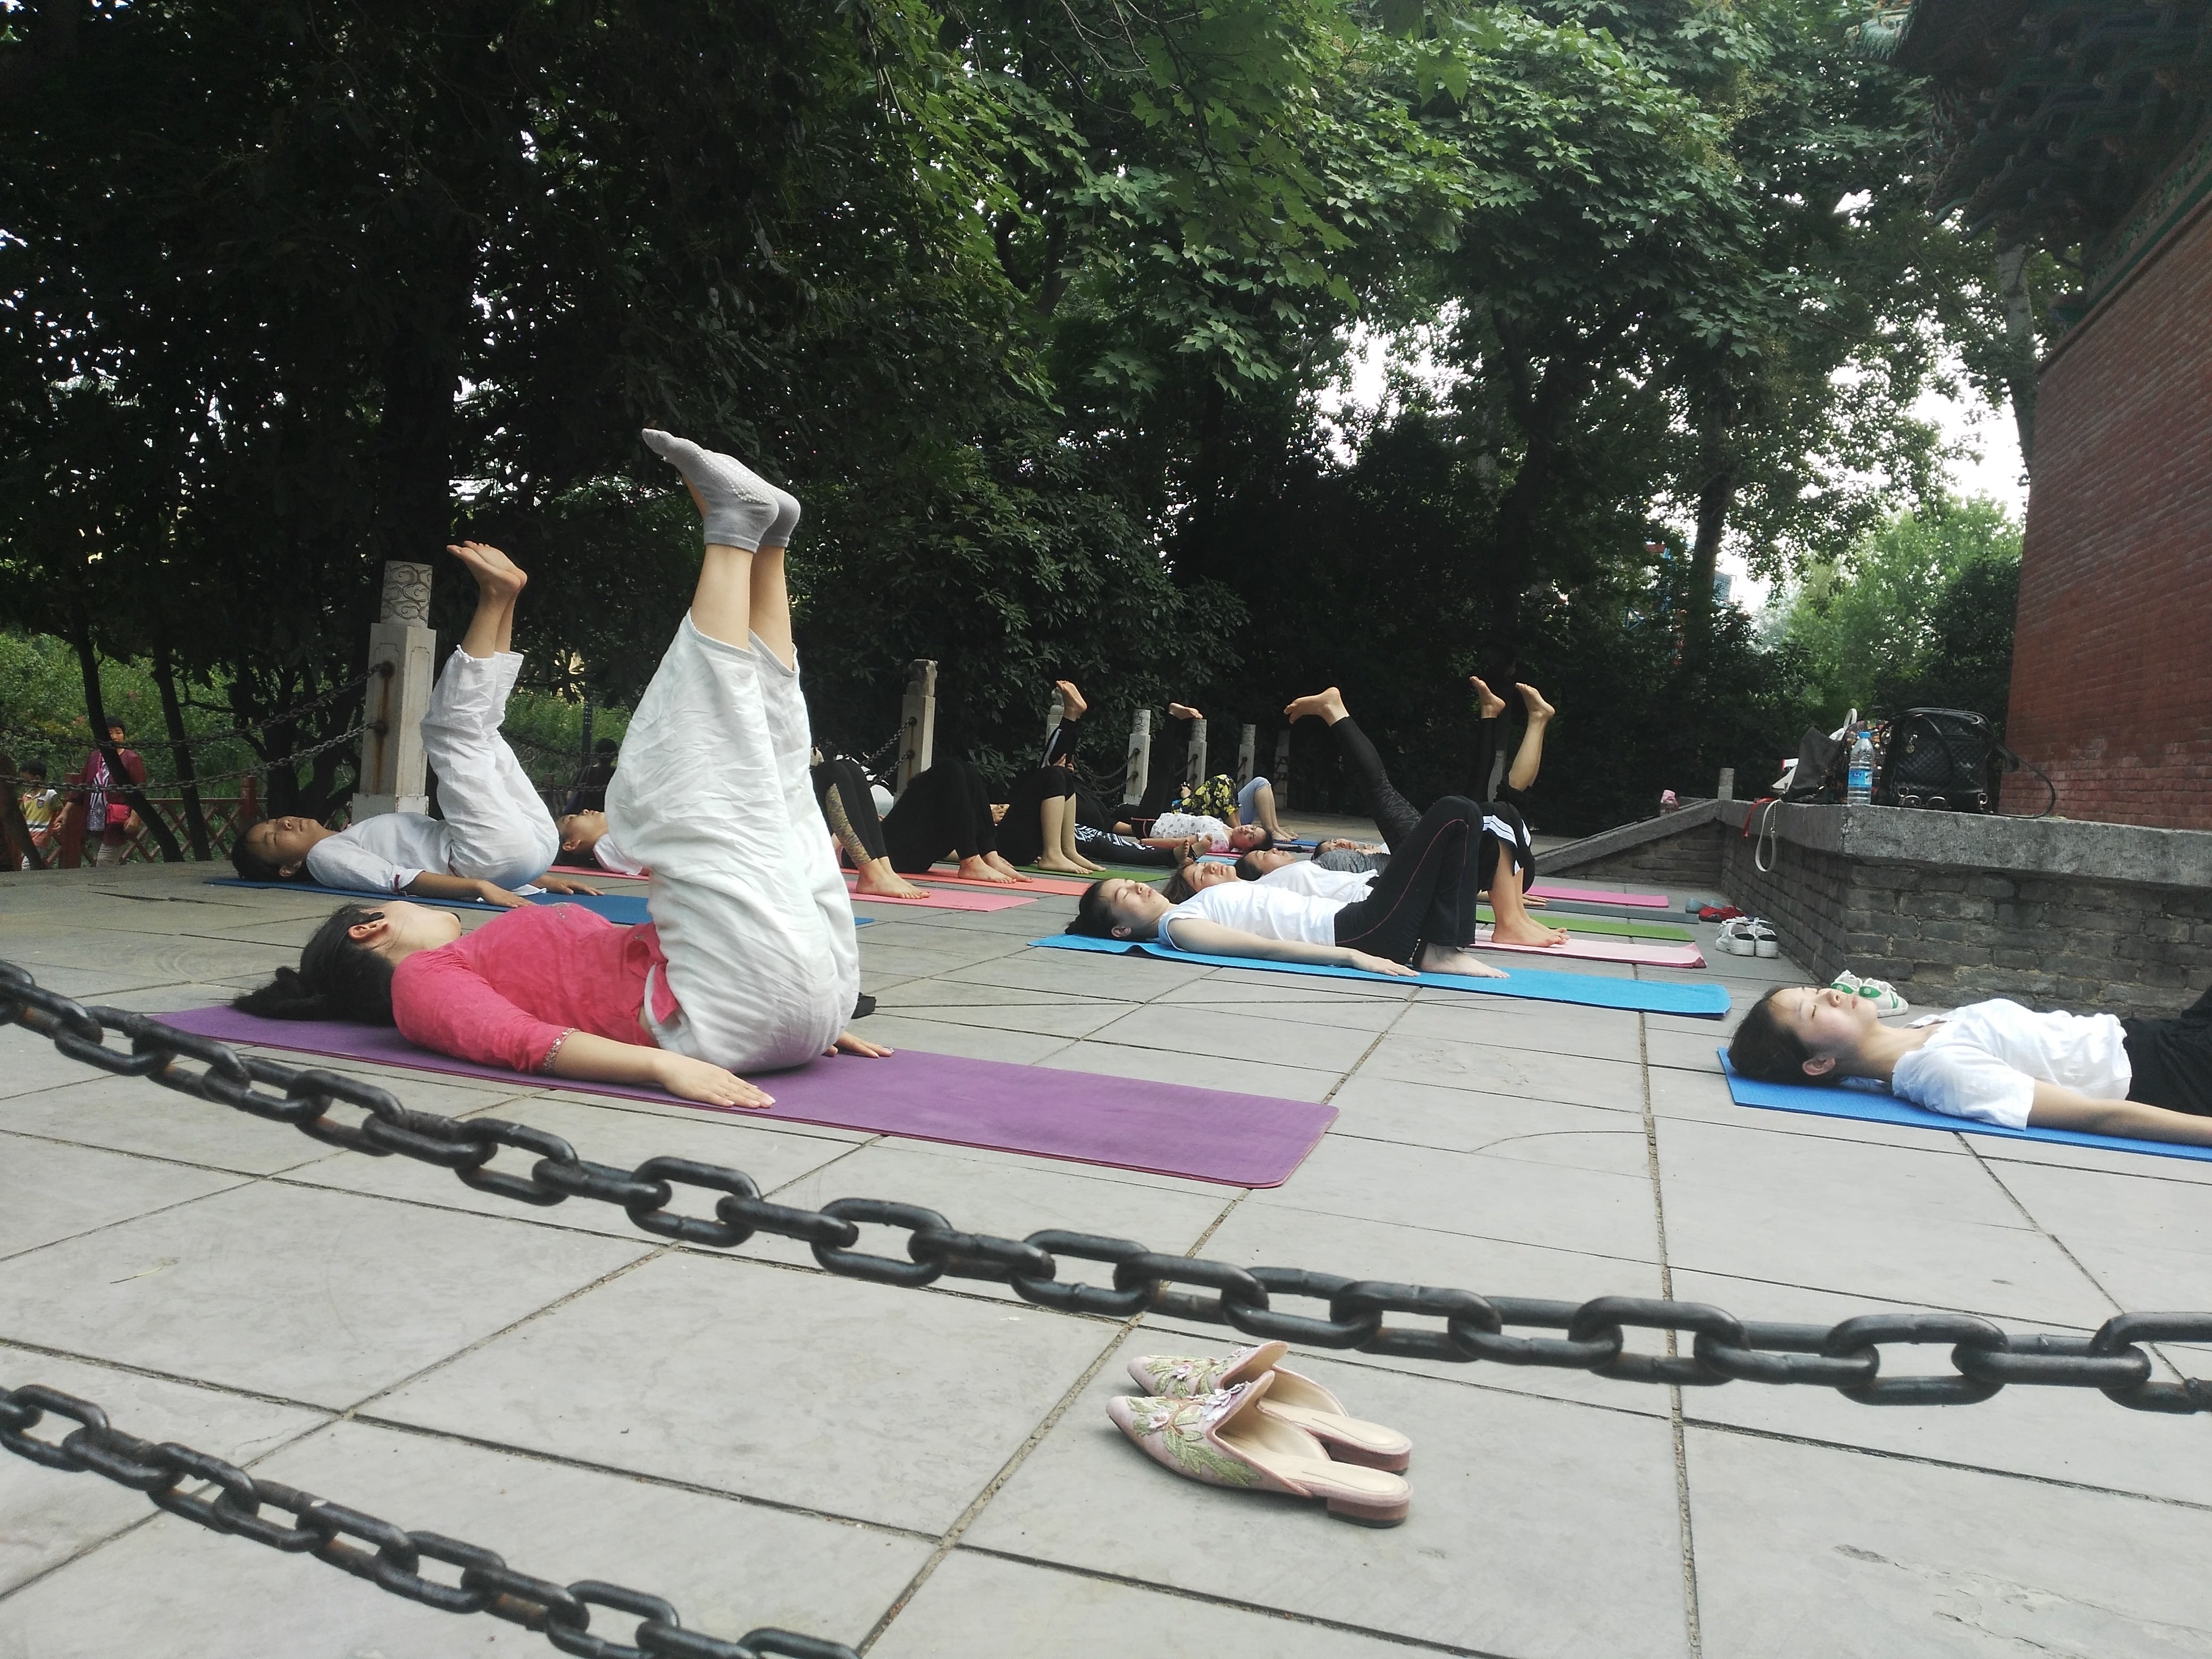 清晨,郑州某公园一群瑜伽爱好者集体秀一字马